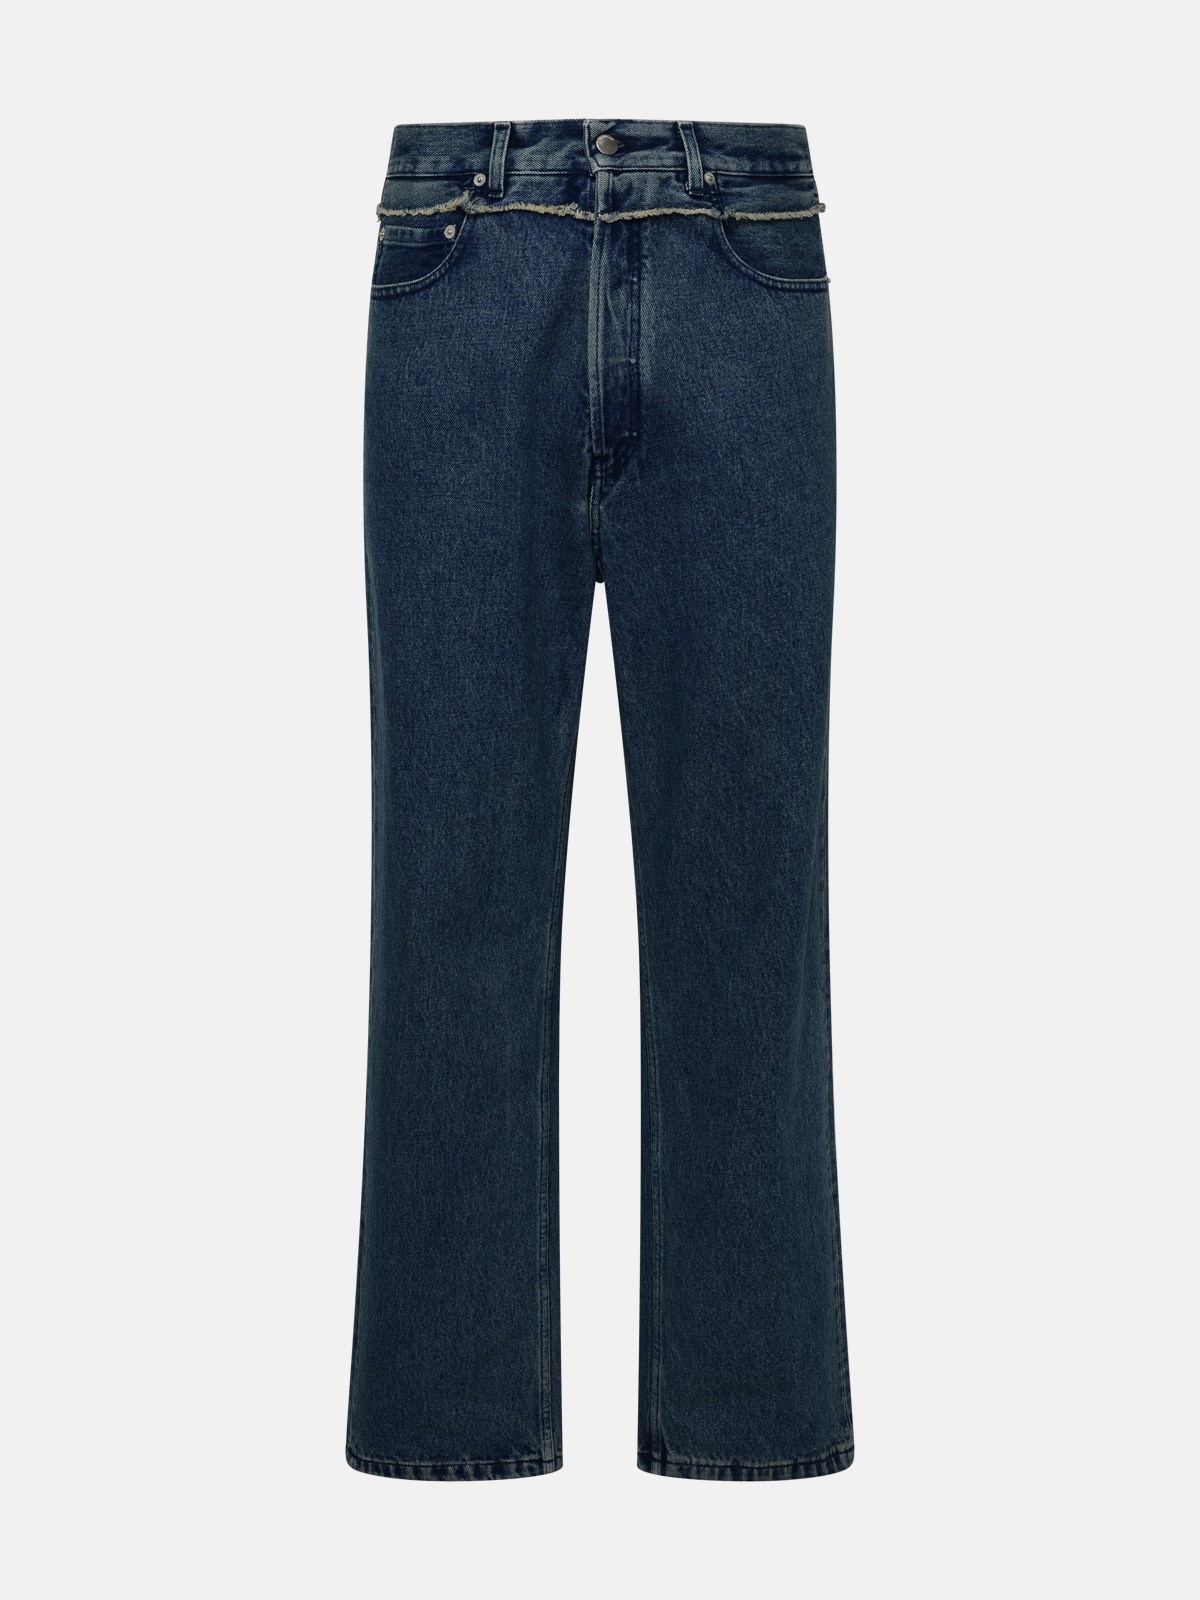 Blue cotton jeans - 1